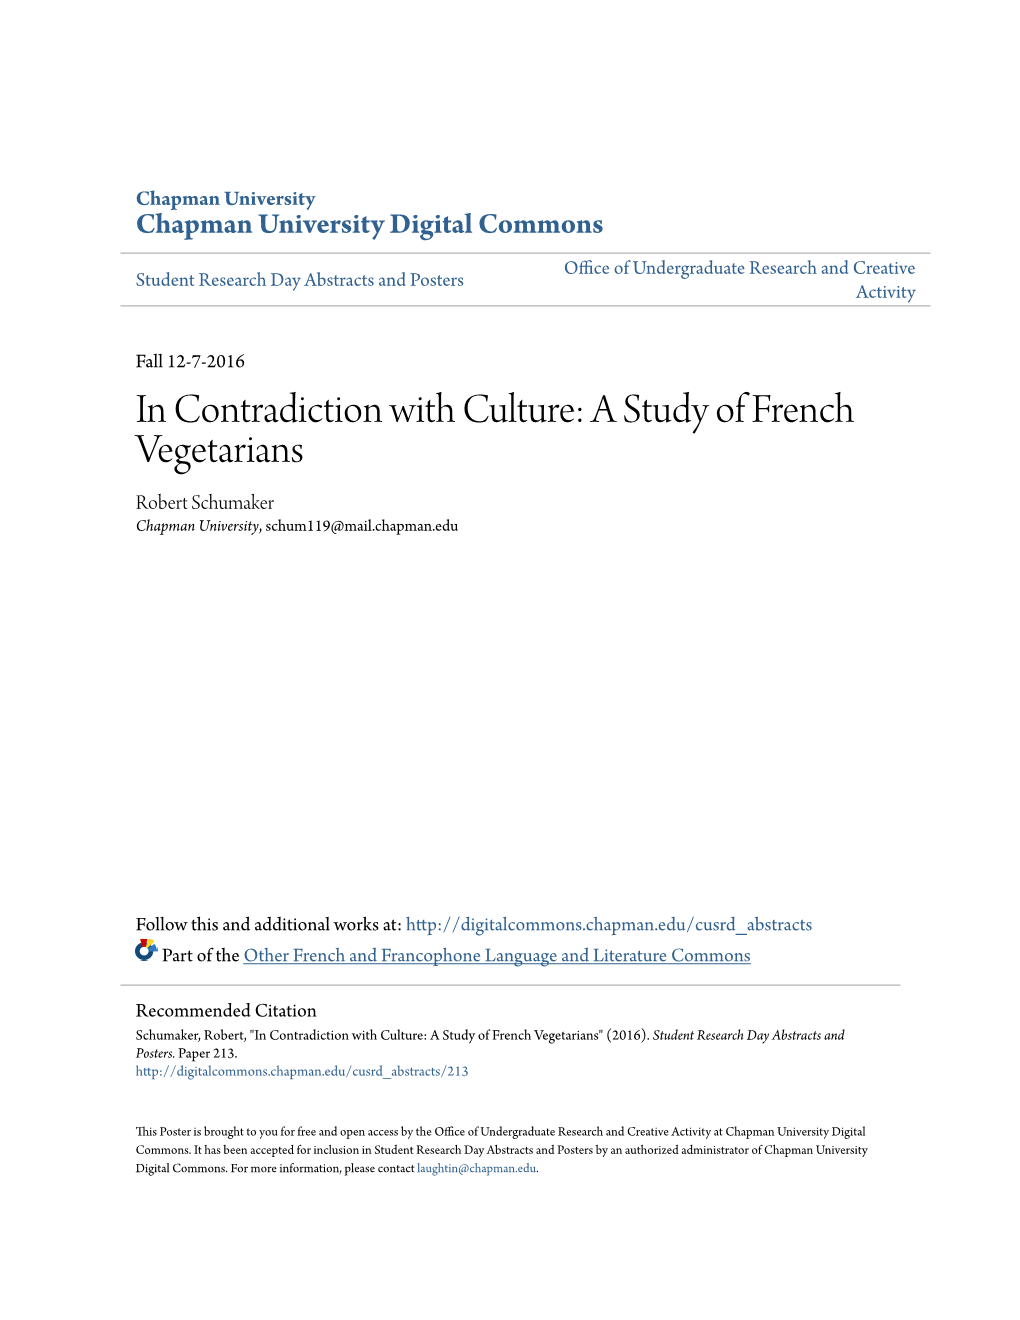 A Study of French Vegetarians Robert Schumaker Chapman University, Schum119@Mail.Chapman.Edu